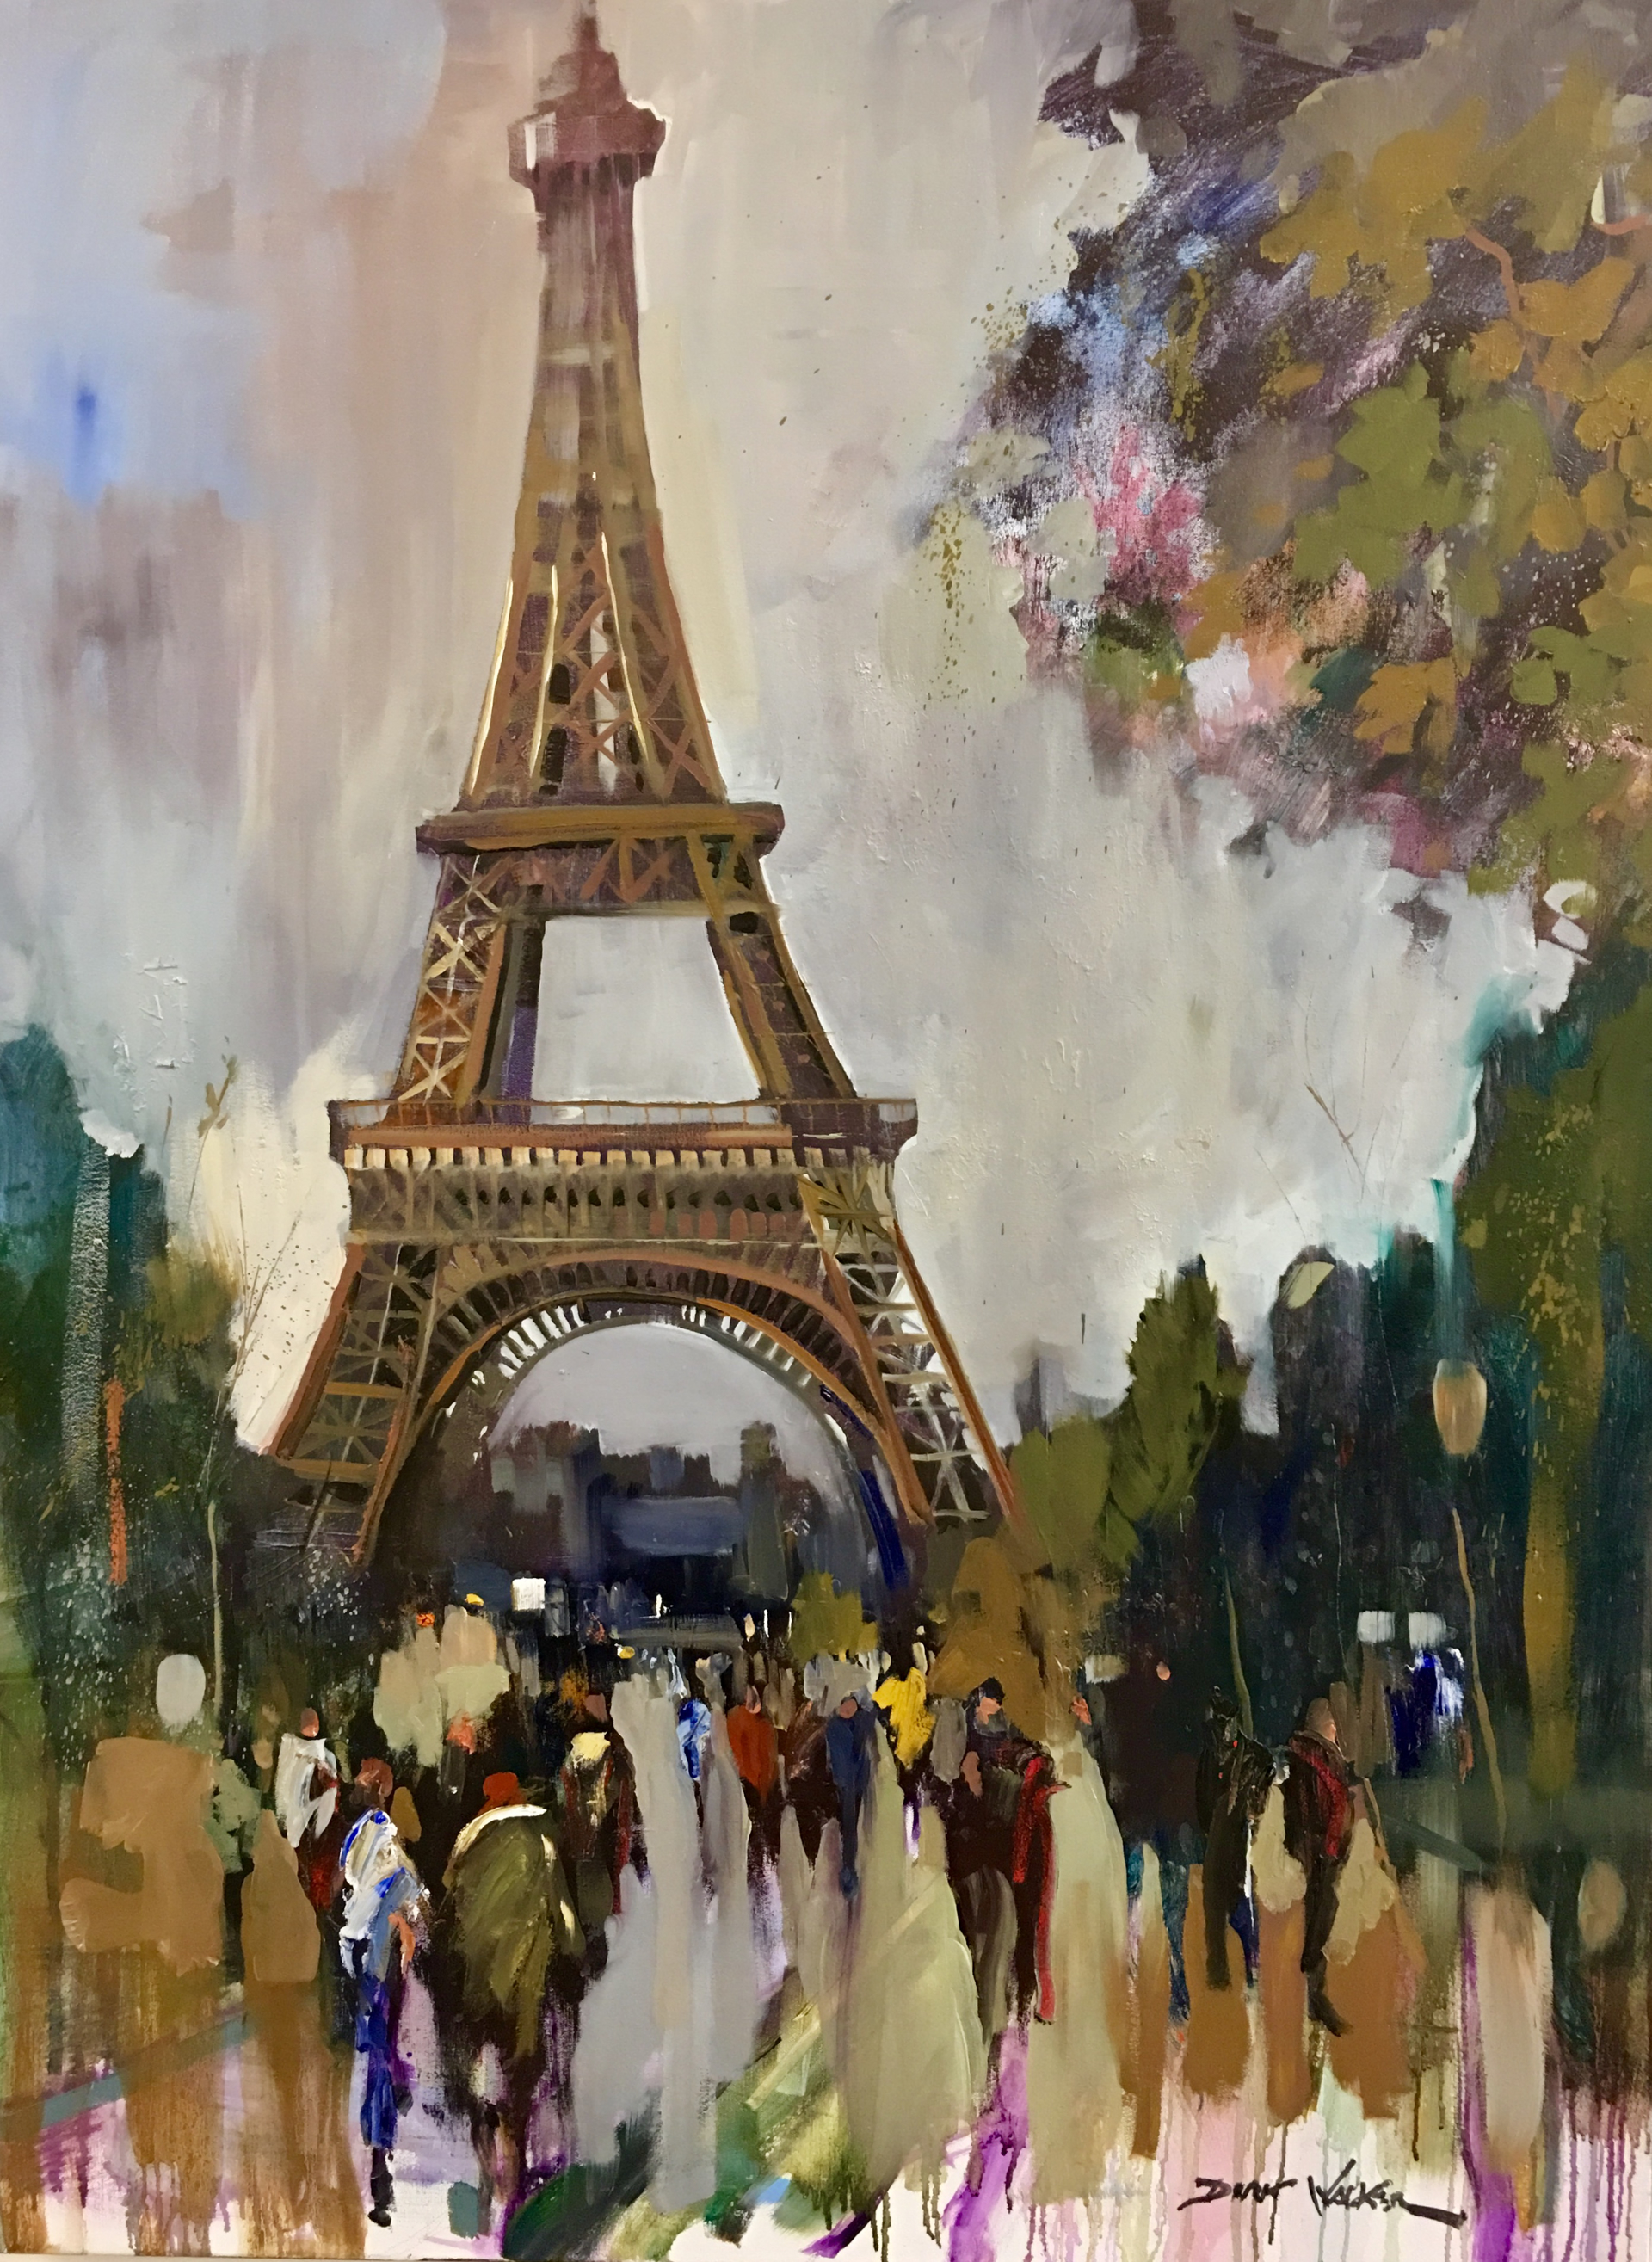 Eiffel Tower by Dirk Walker